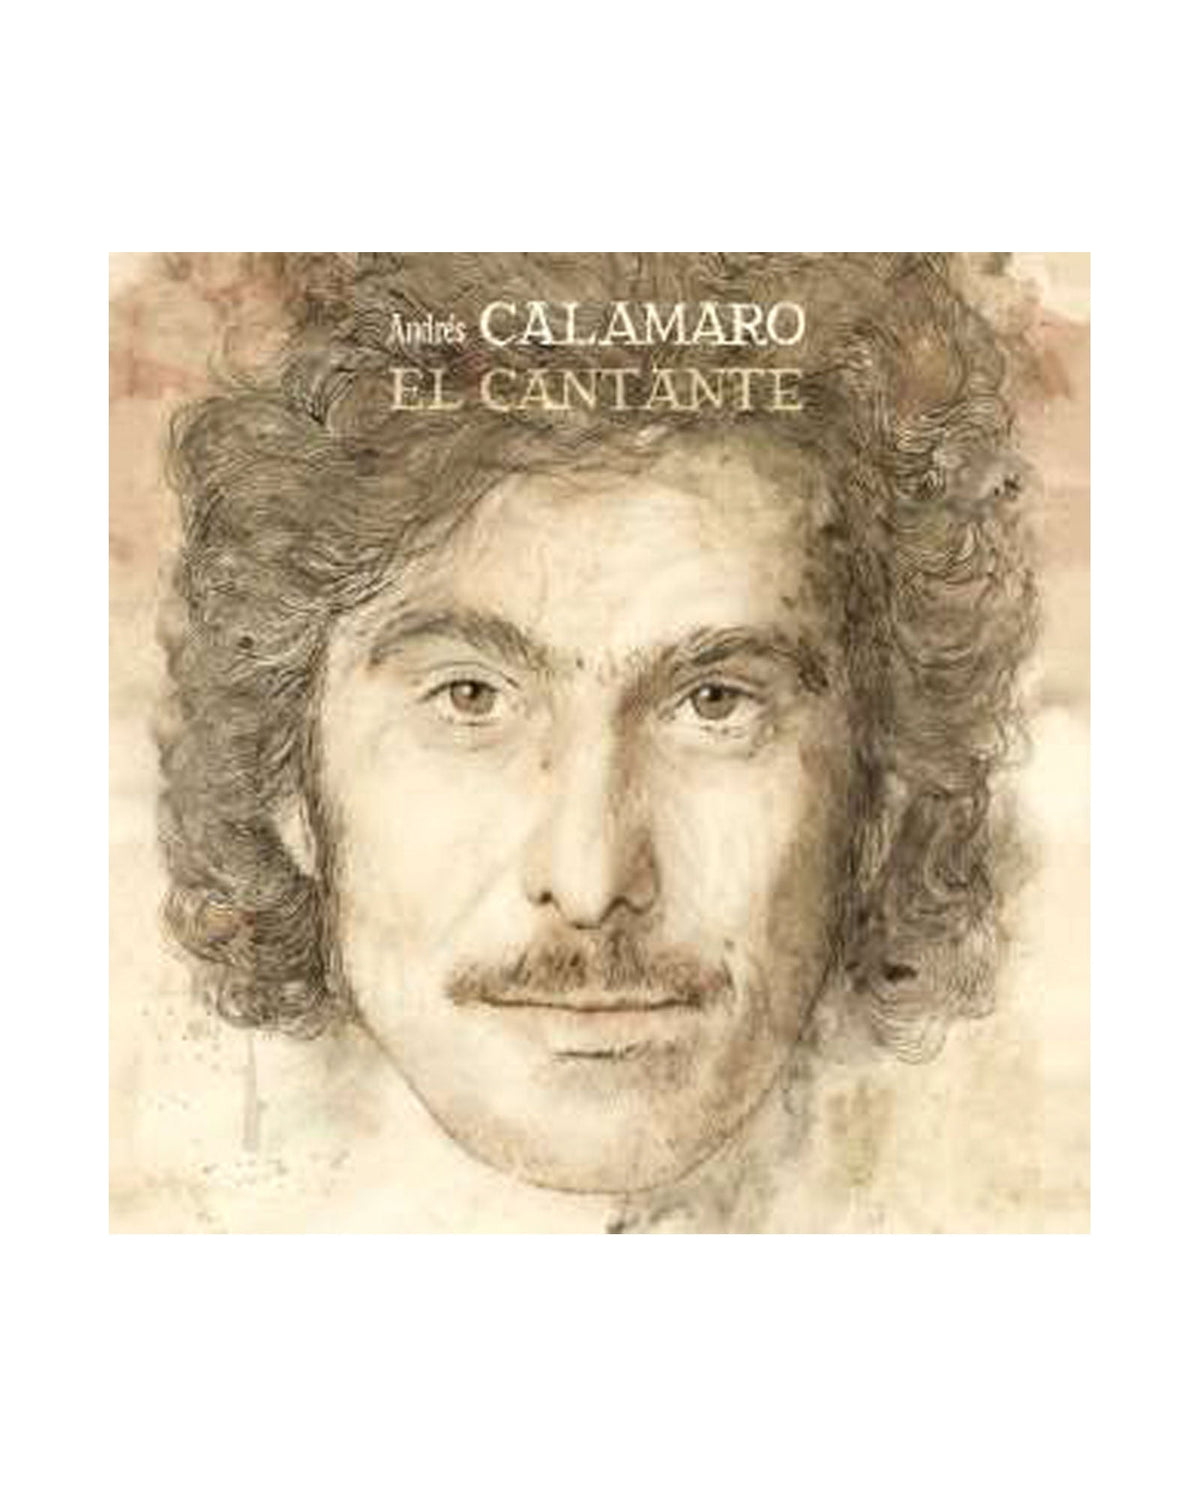 Andrés Calamaro - LP Vinilo "El Cantante" - D2fy · Rocktud - Rocktud